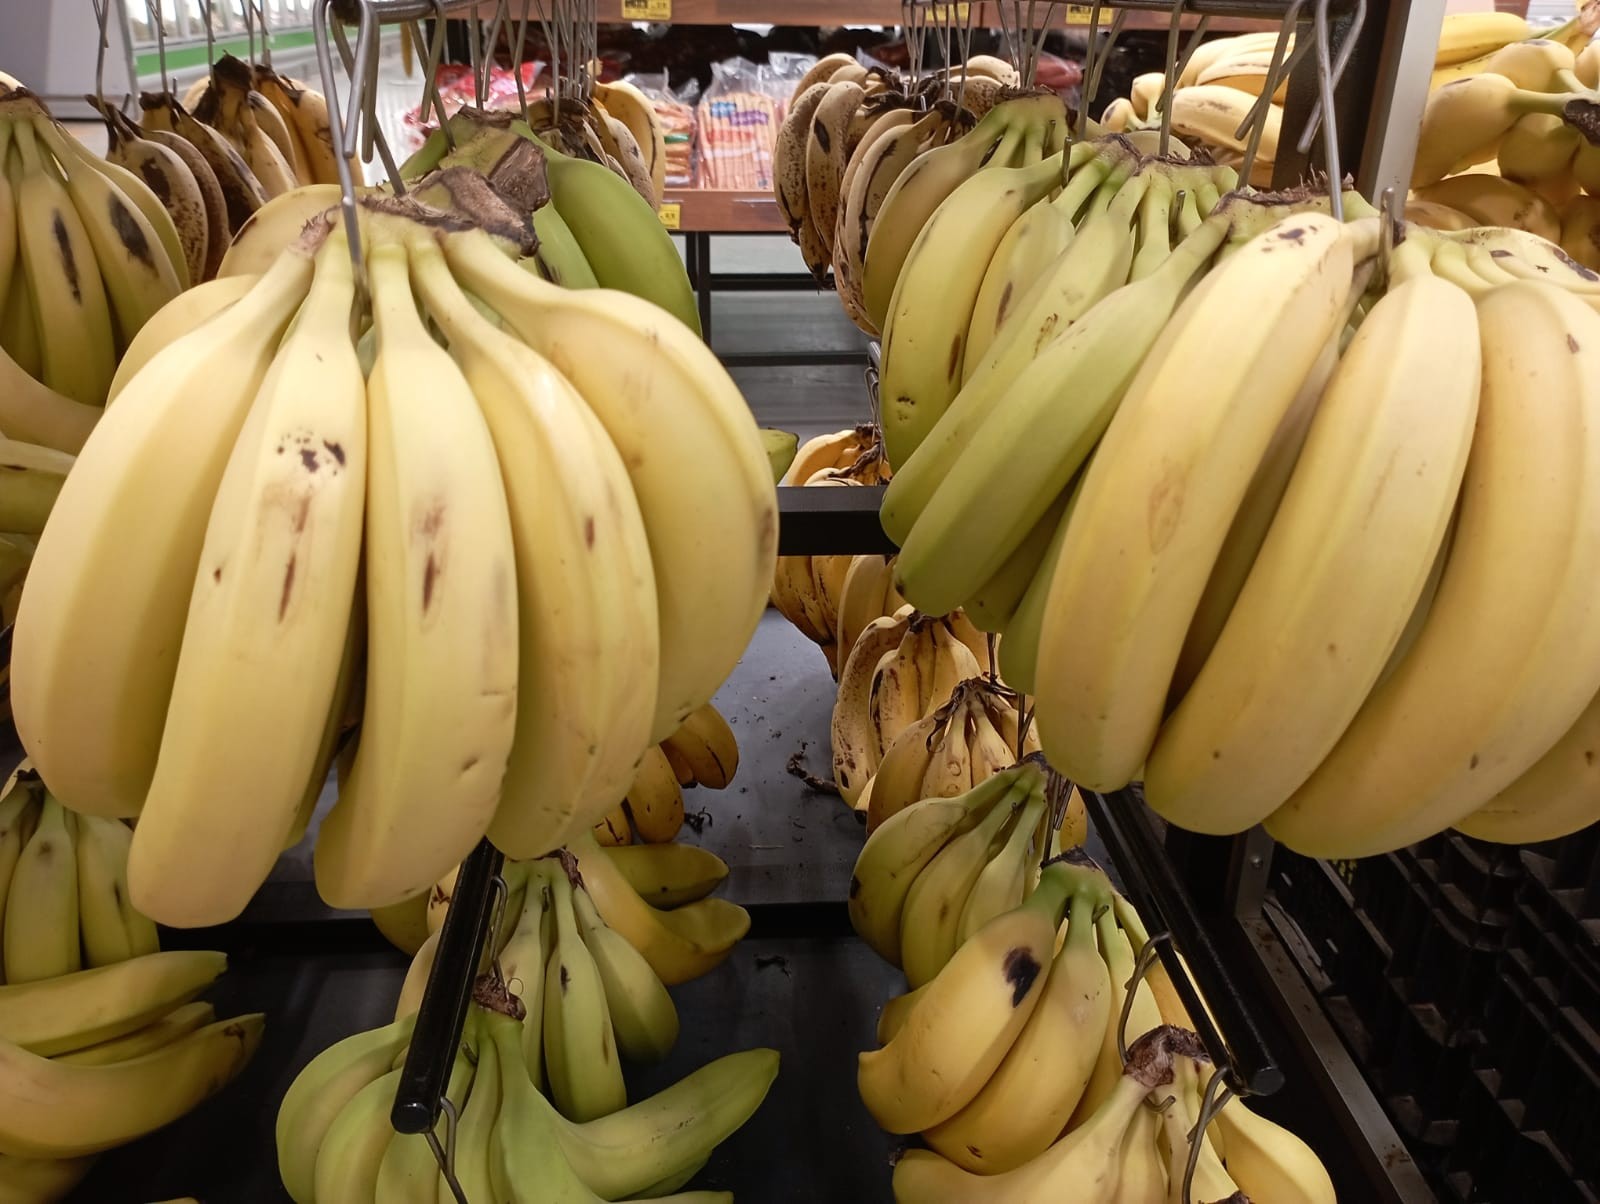 Banana estraga rápido e rende memes na internet; aprenda uma dica simples para conservar a fruta 